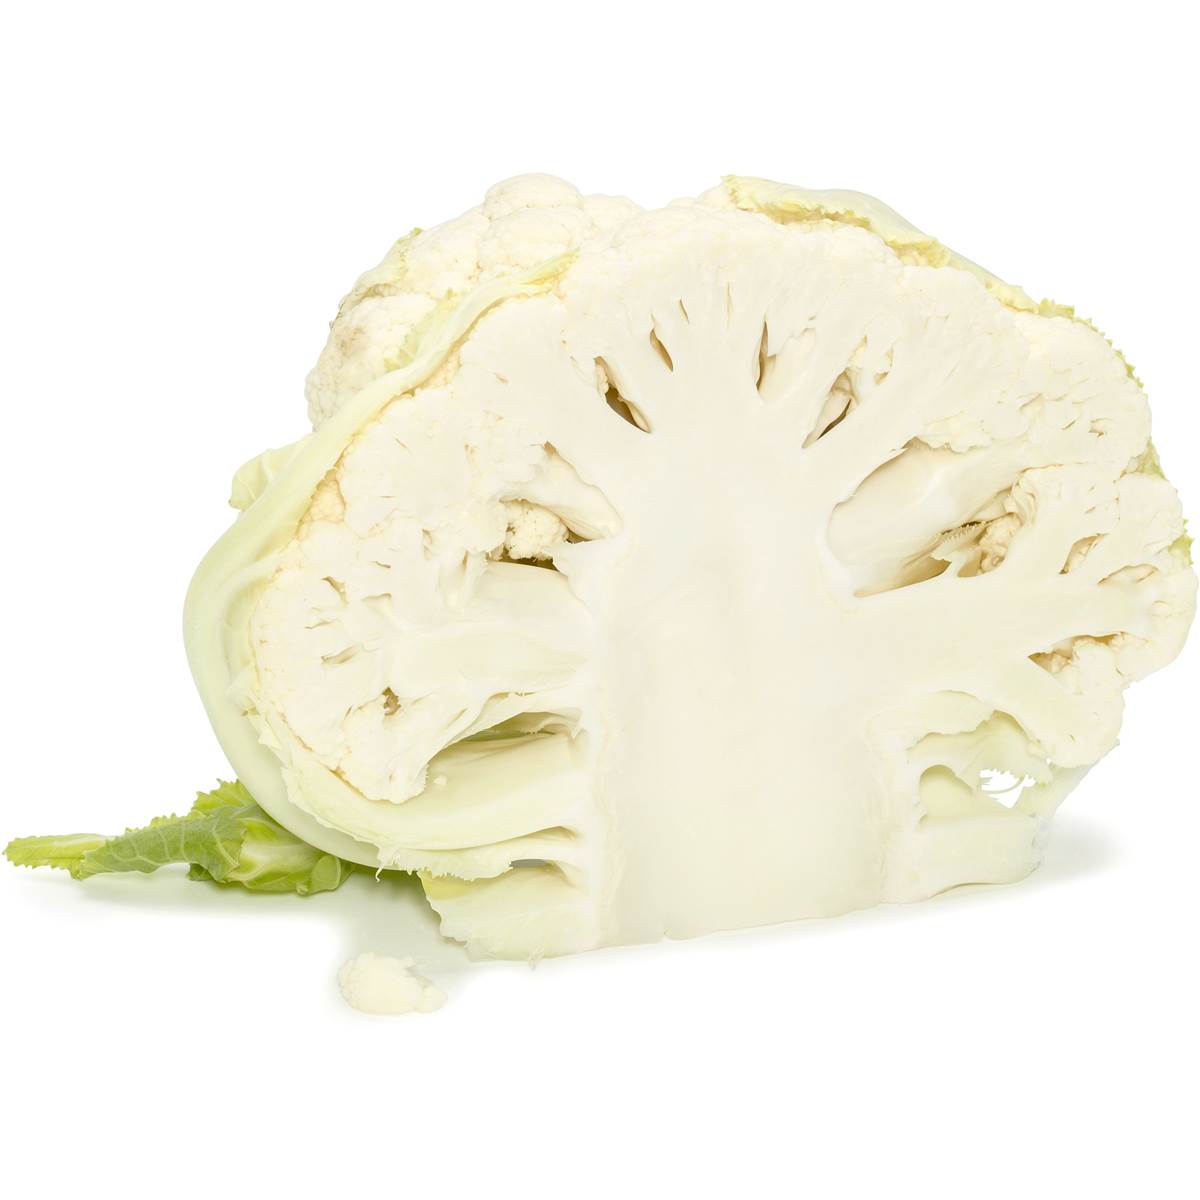  Cauliflower 